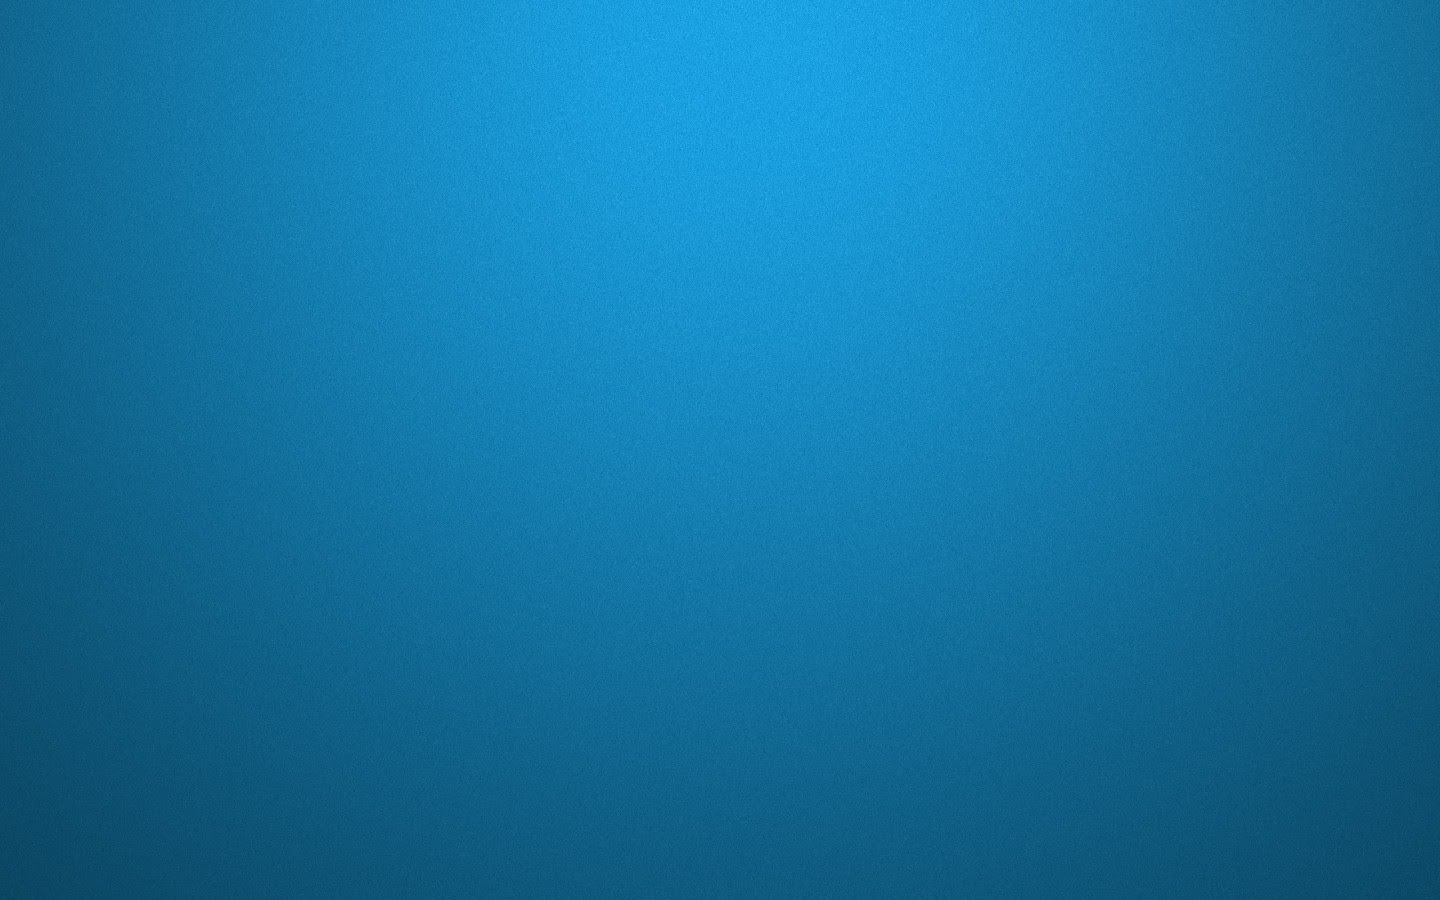 einfaches desktop hintergrundbild,blau,aqua,türkis,blaugrün,tagsüber